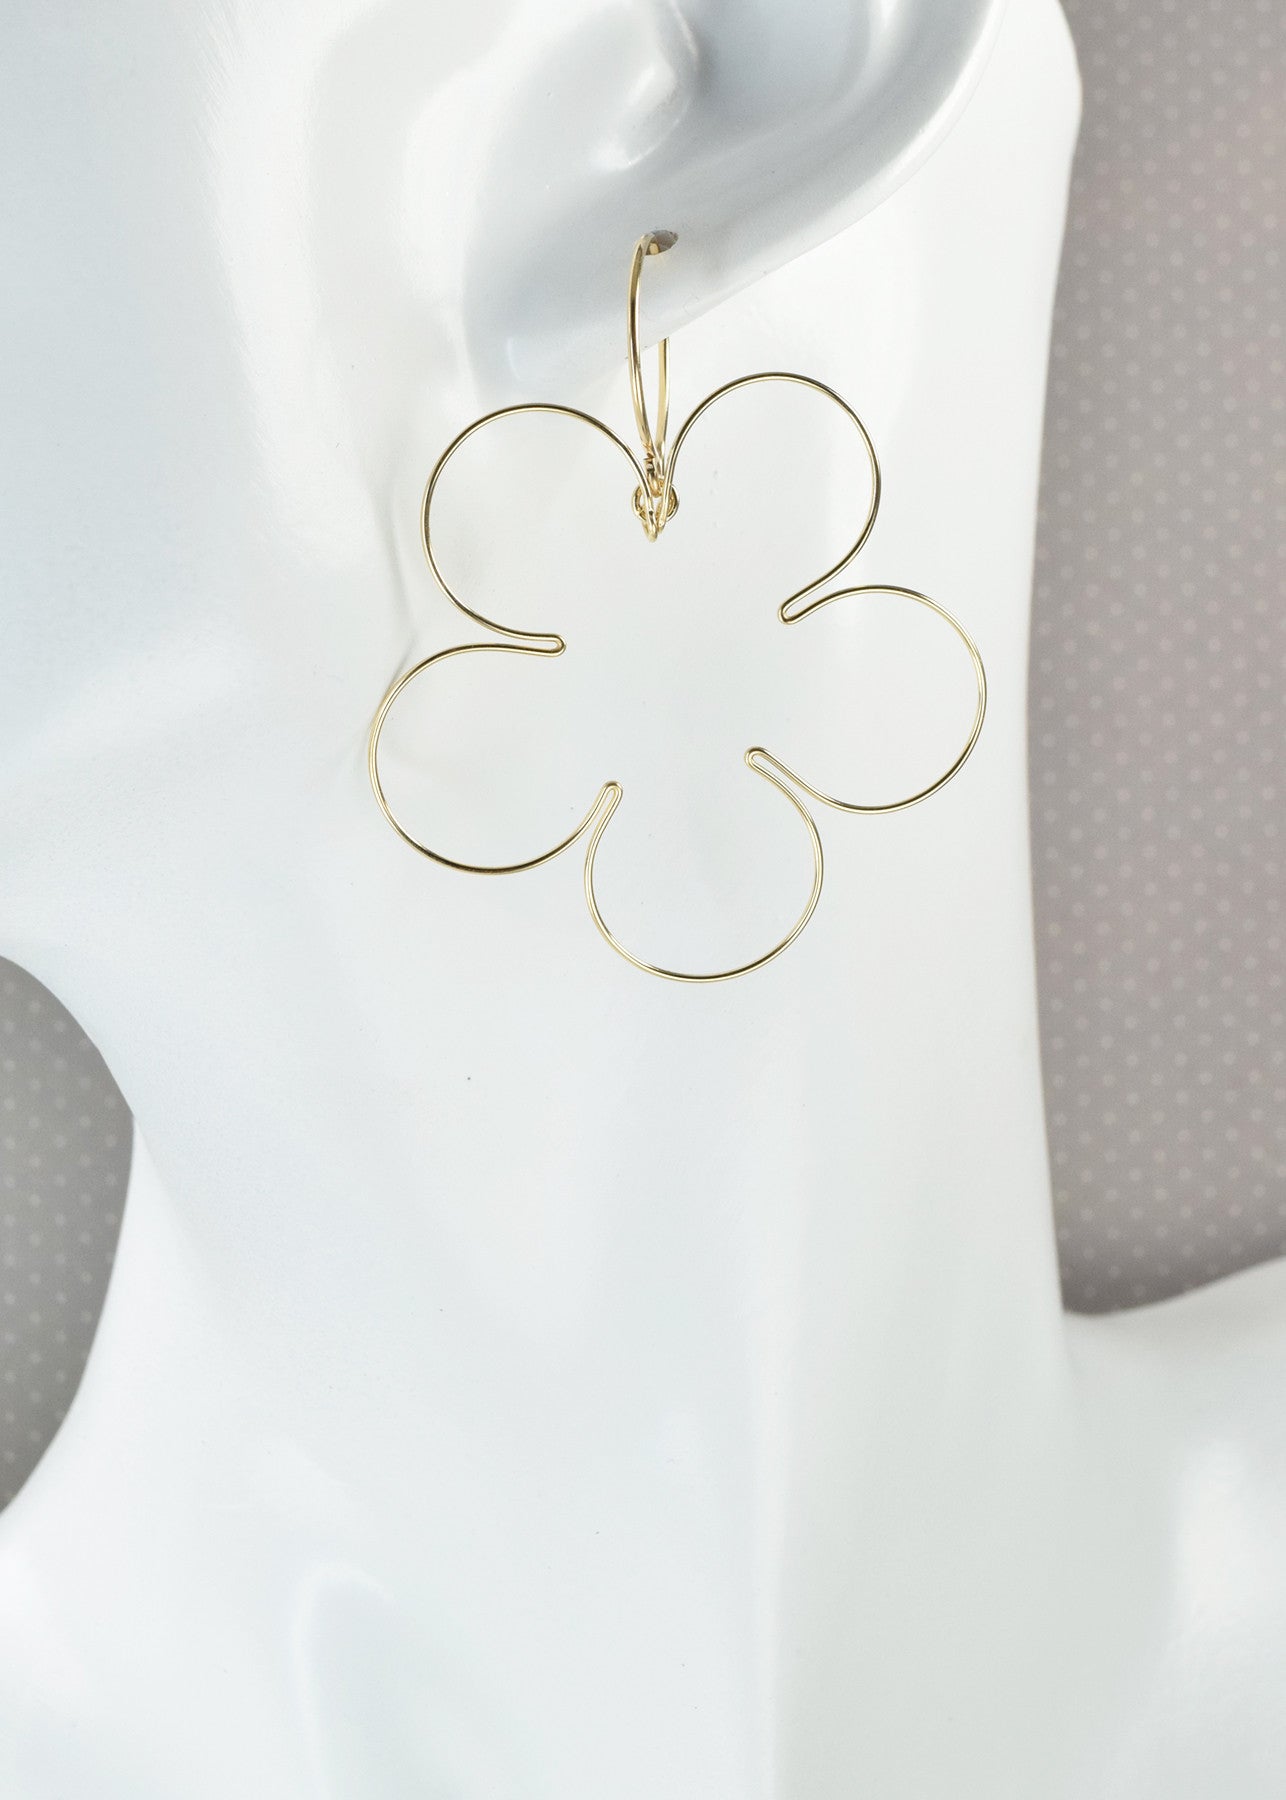 Blossom Gold Earrings, Large